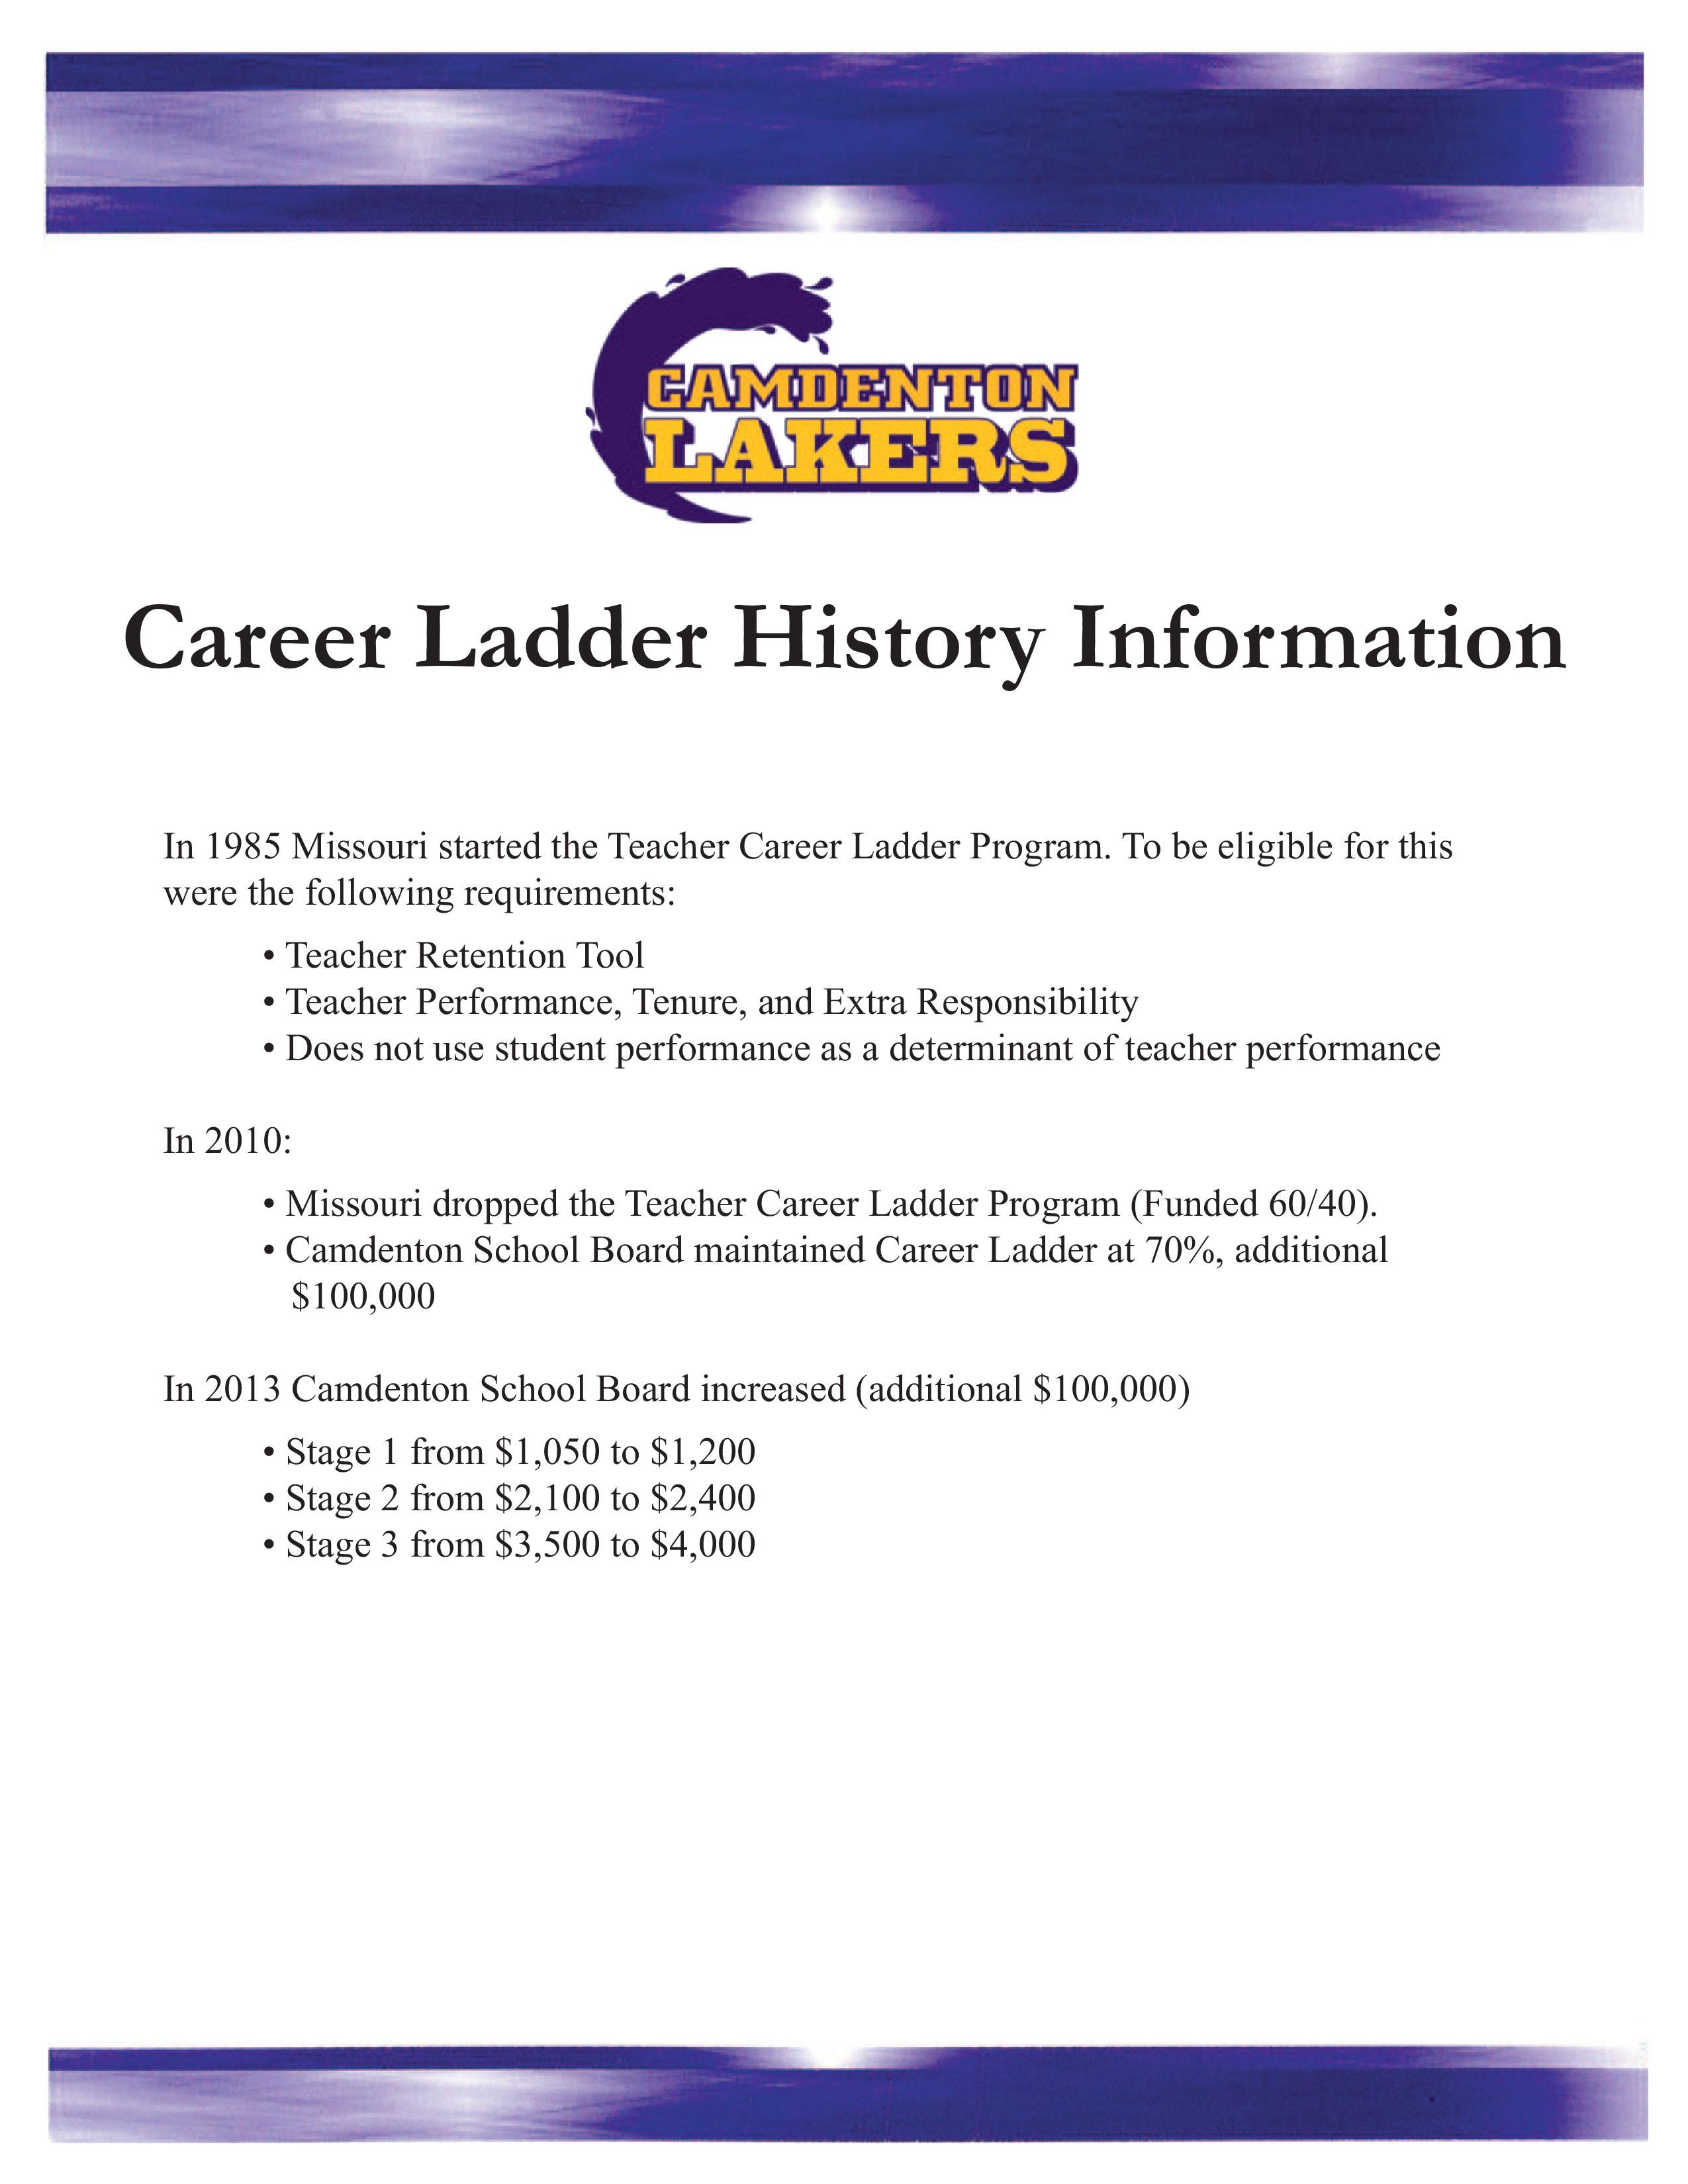 Career Ladder History - Pg. 1